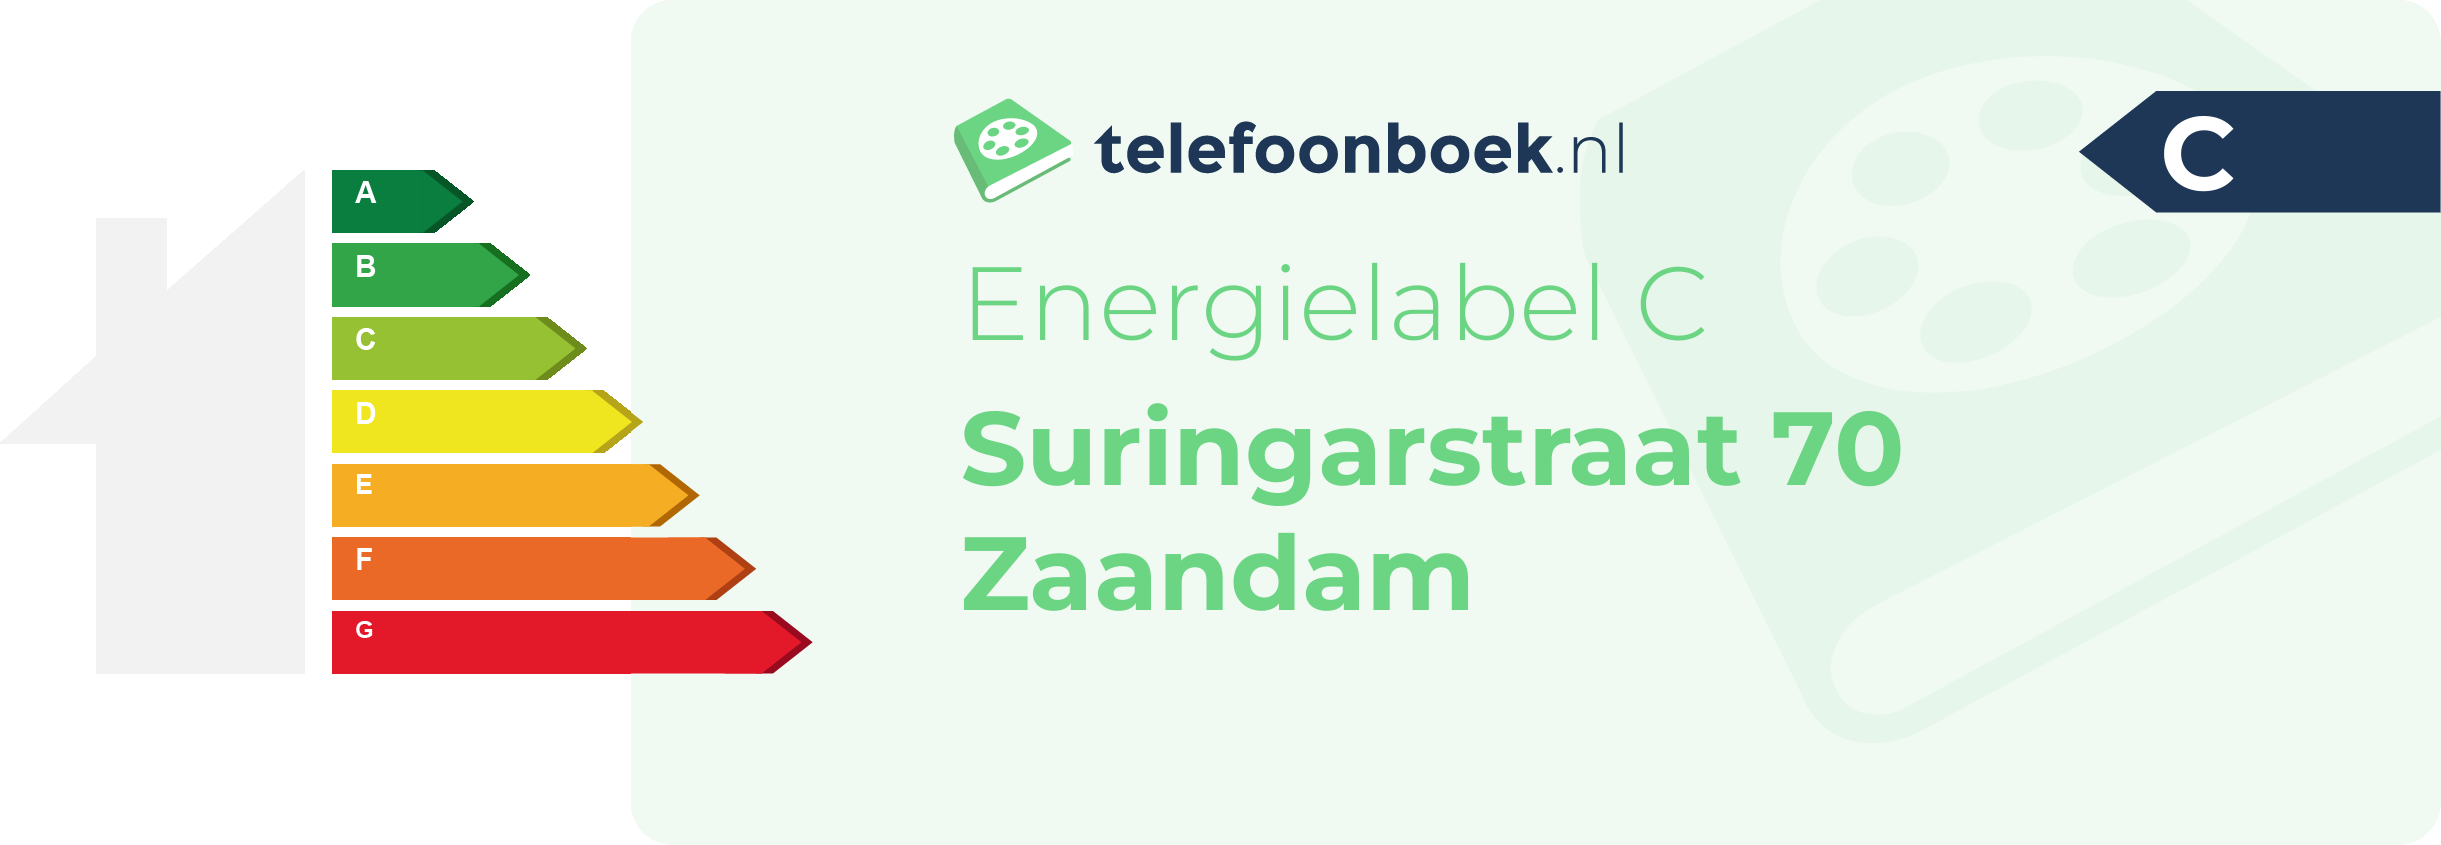 Energielabel Suringarstraat 70 Zaandam